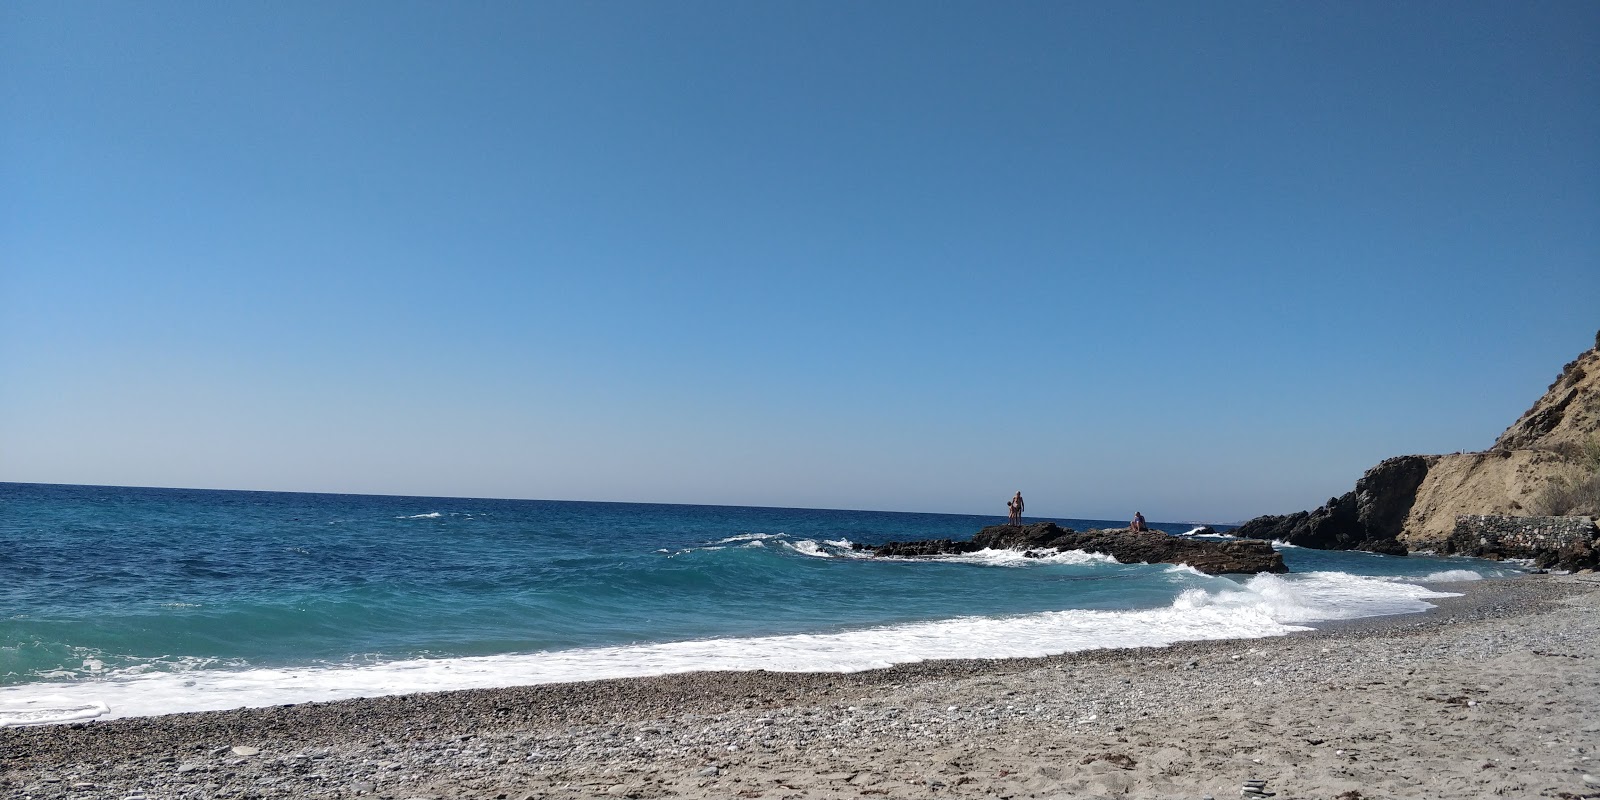 Playa de las Alberquillas'in fotoğrafı hafif ince çakıl taş yüzey ile